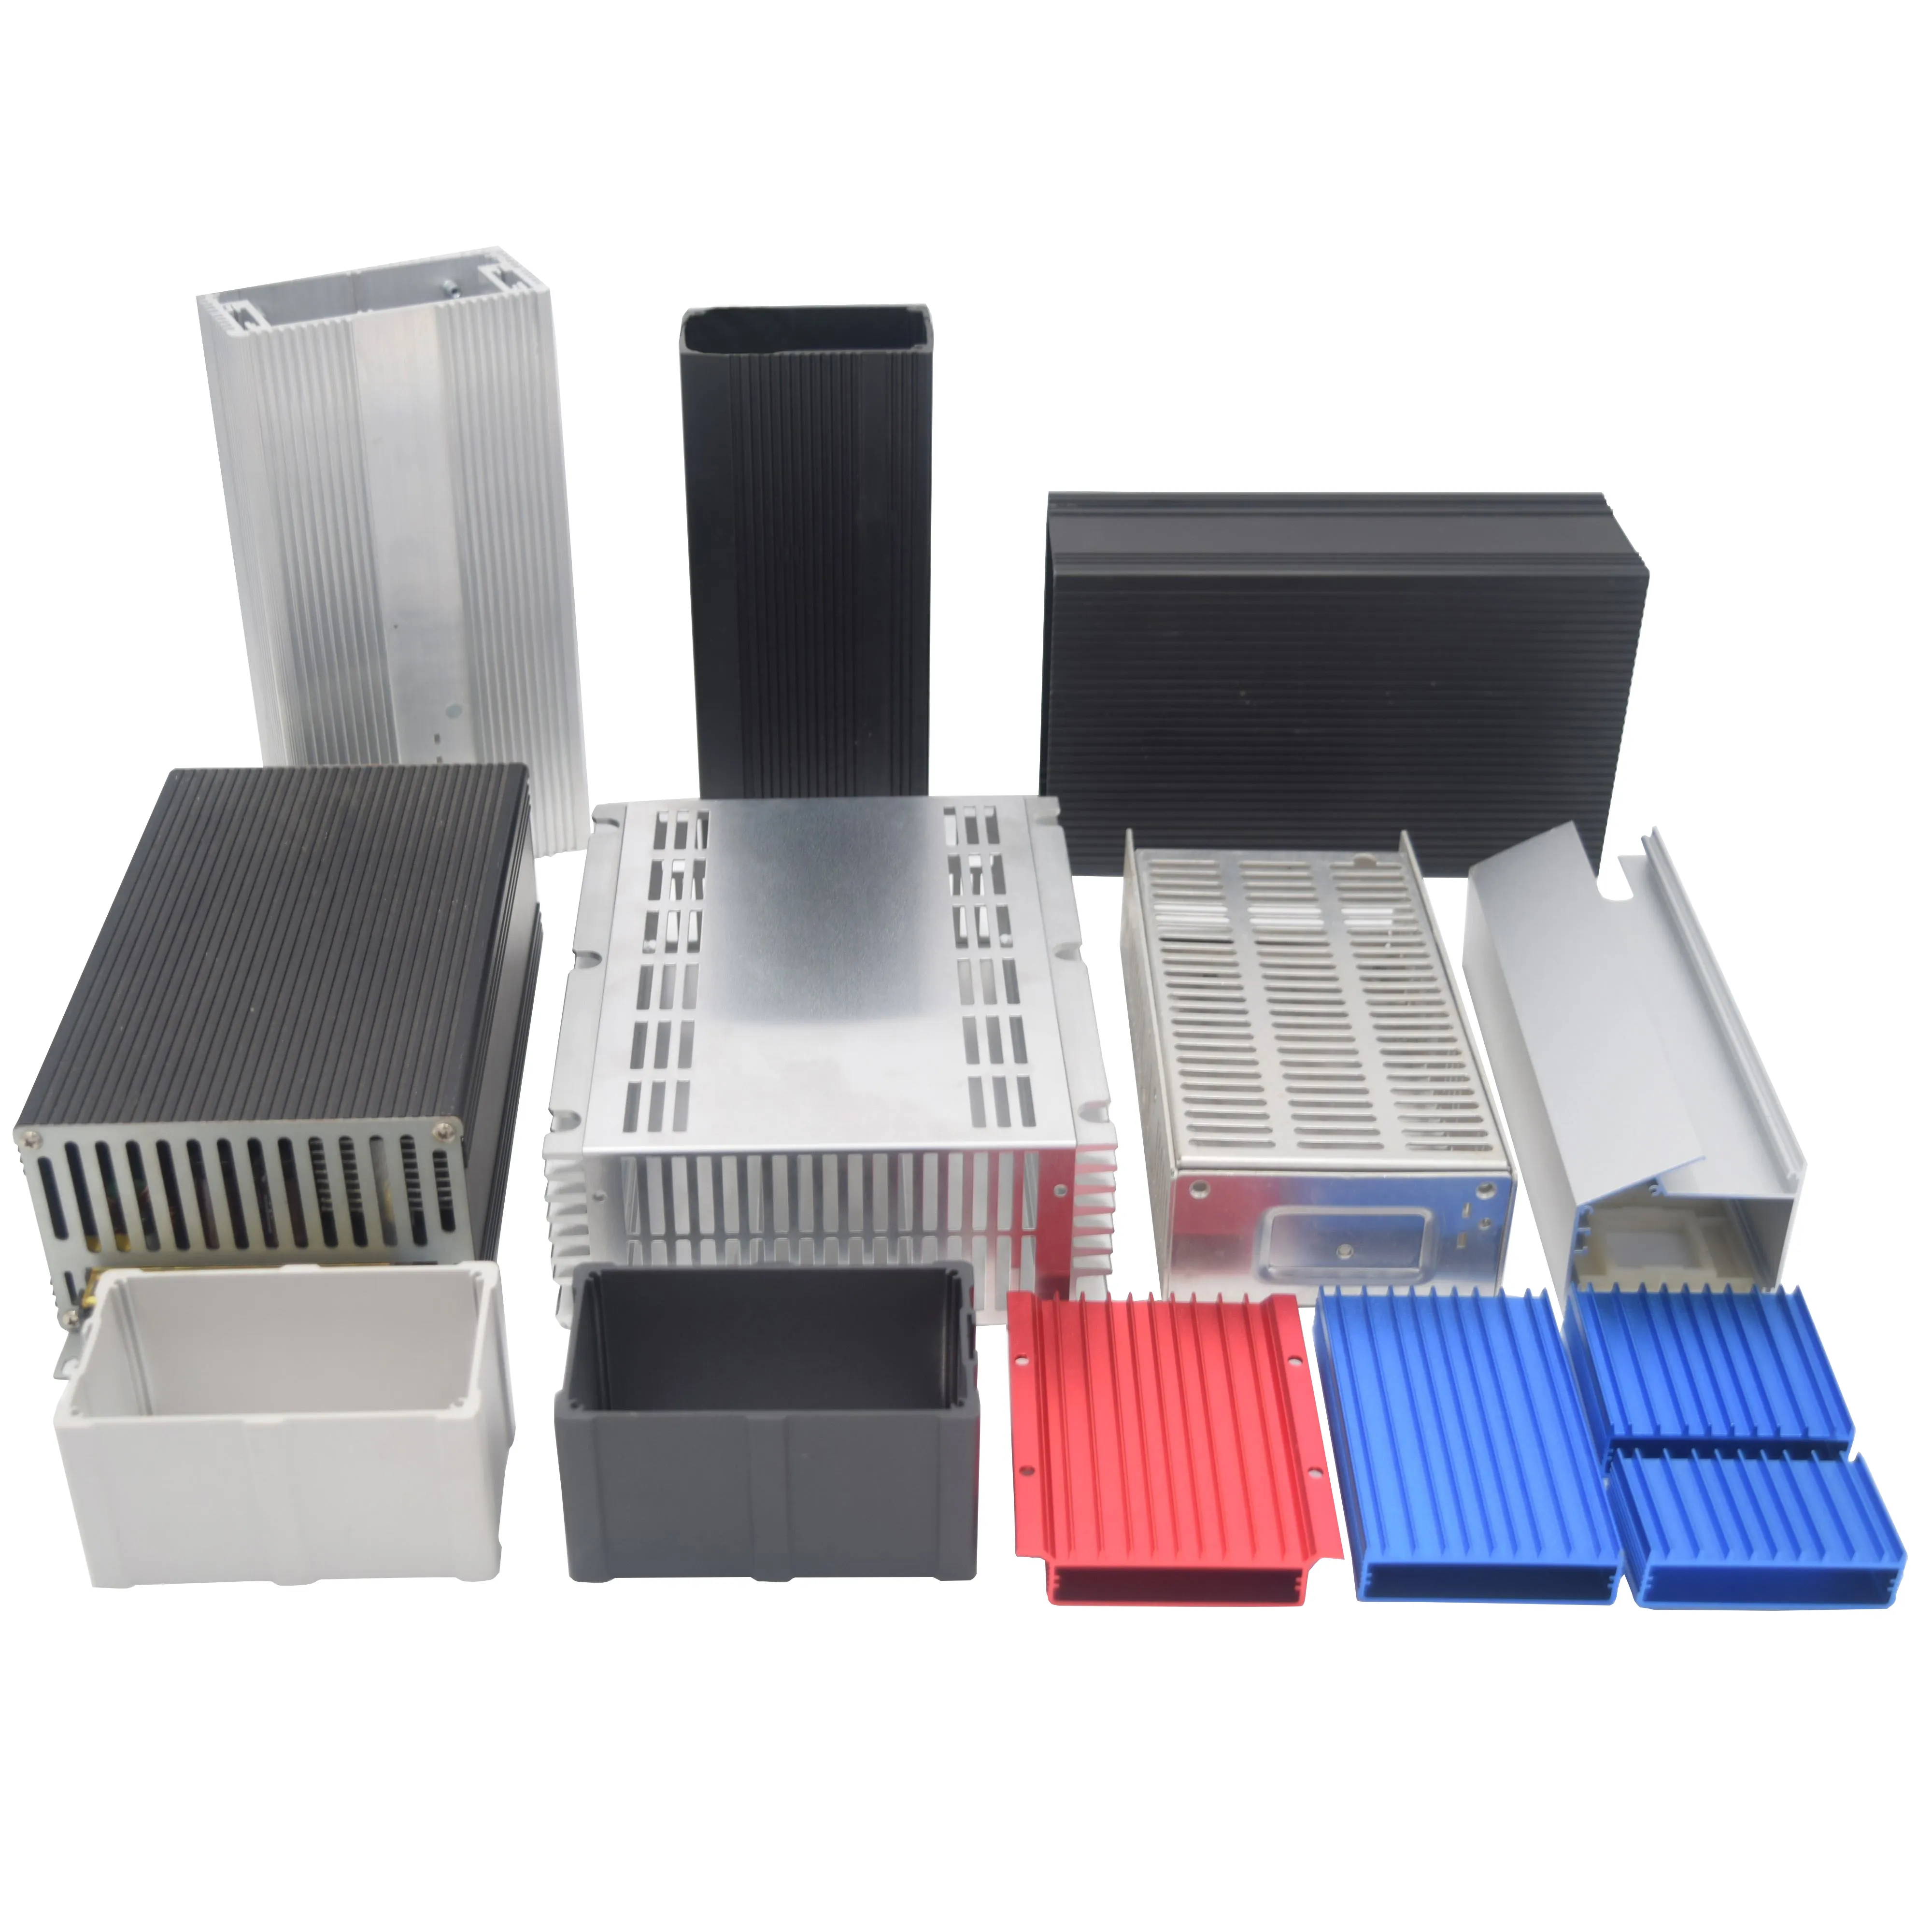 Caja de aluminio para batería, equipo de PCB, altavoz Bluetooth, caja de aluminio extruido, caja ensamblada de aluminio